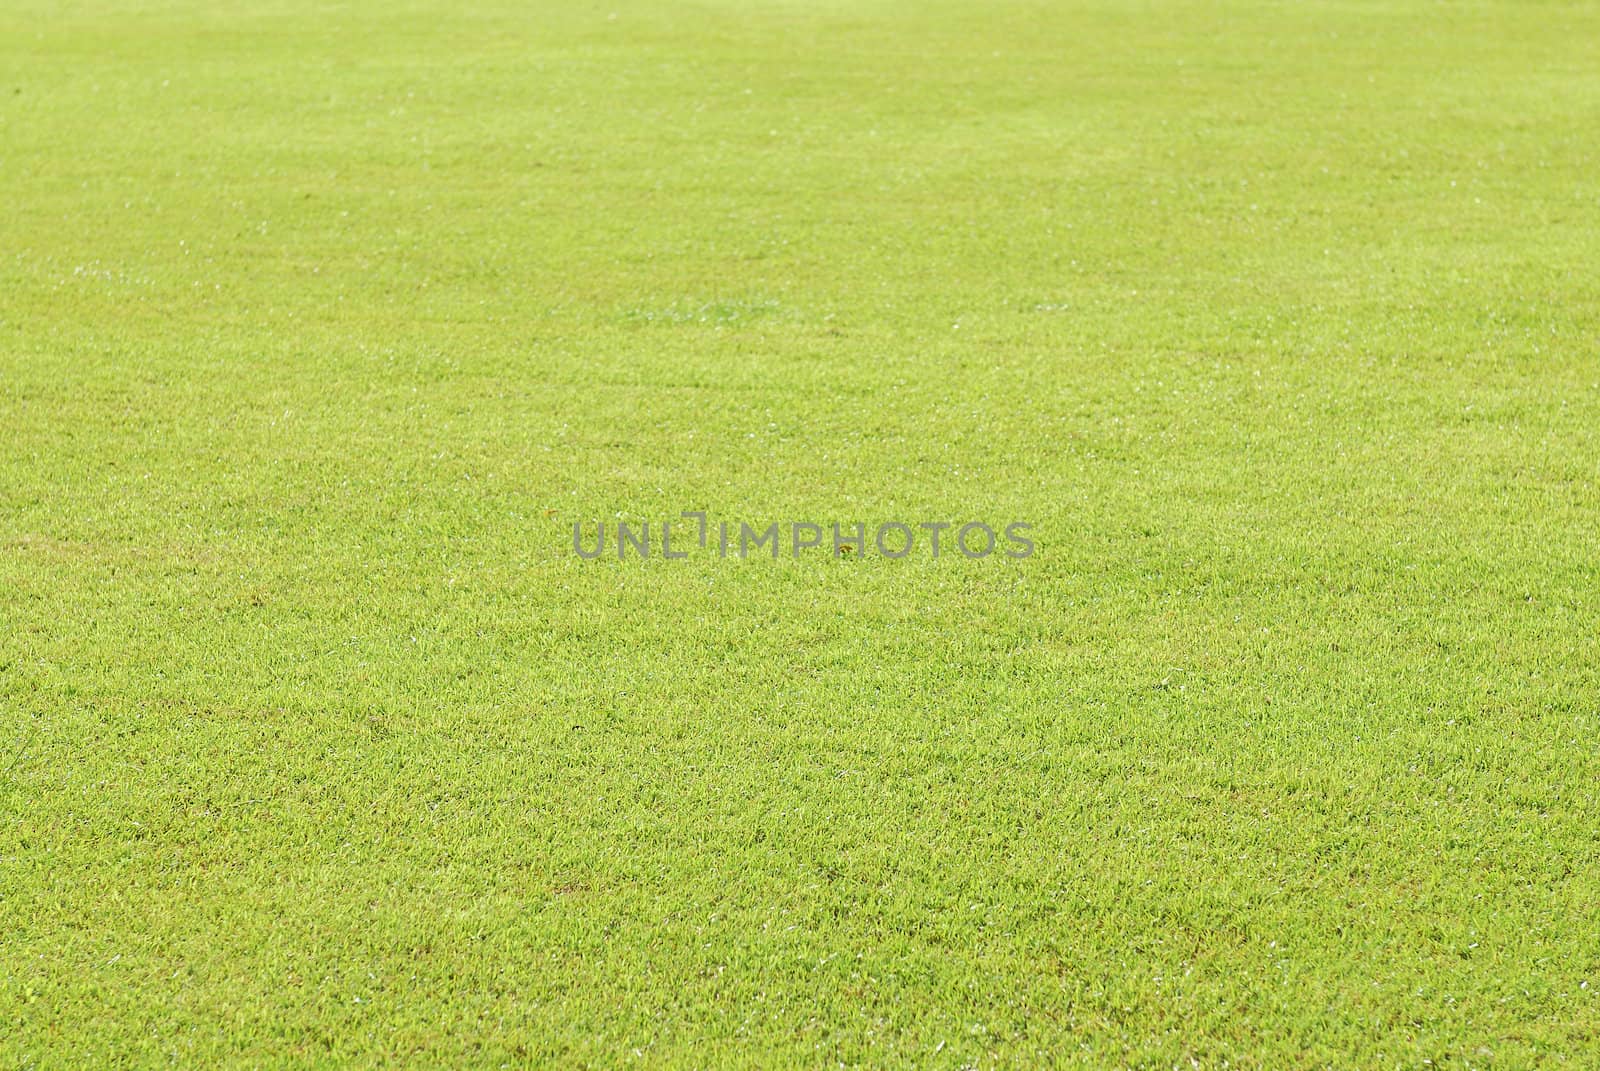 Green grass soccer field by teen00000